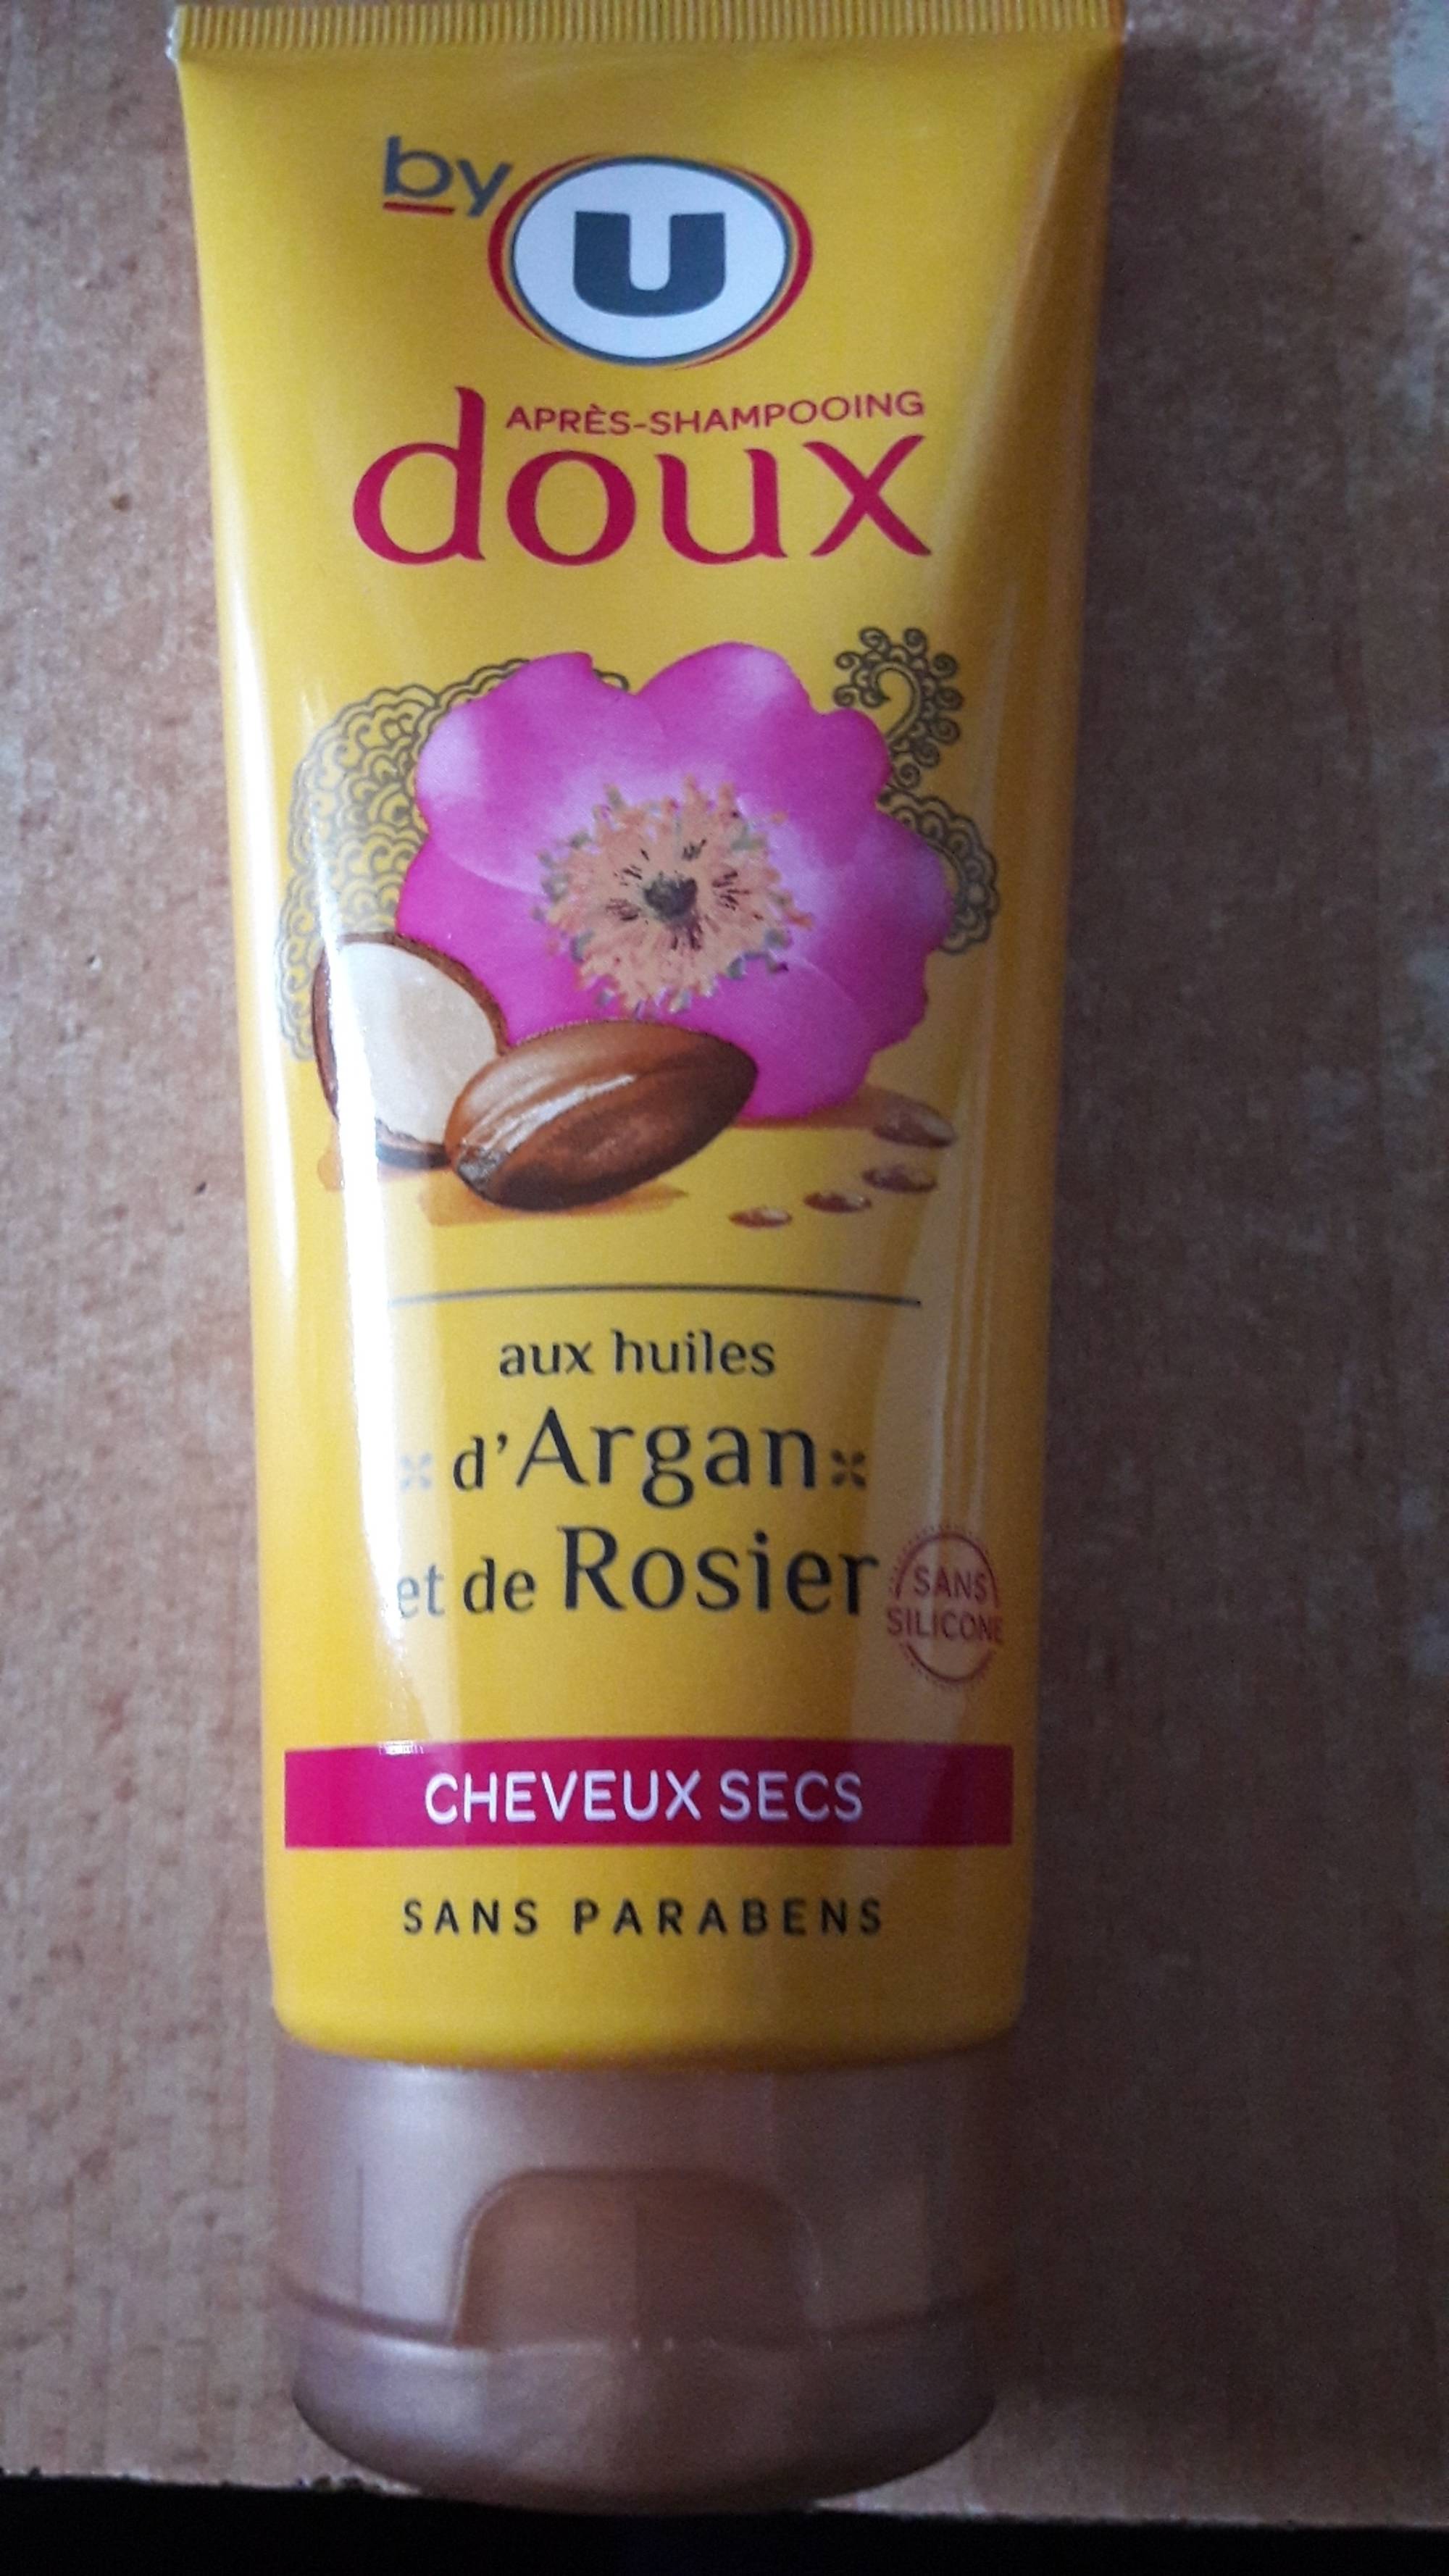 BY U - Après-shampooing doux aux huiles d'argan et de rosier